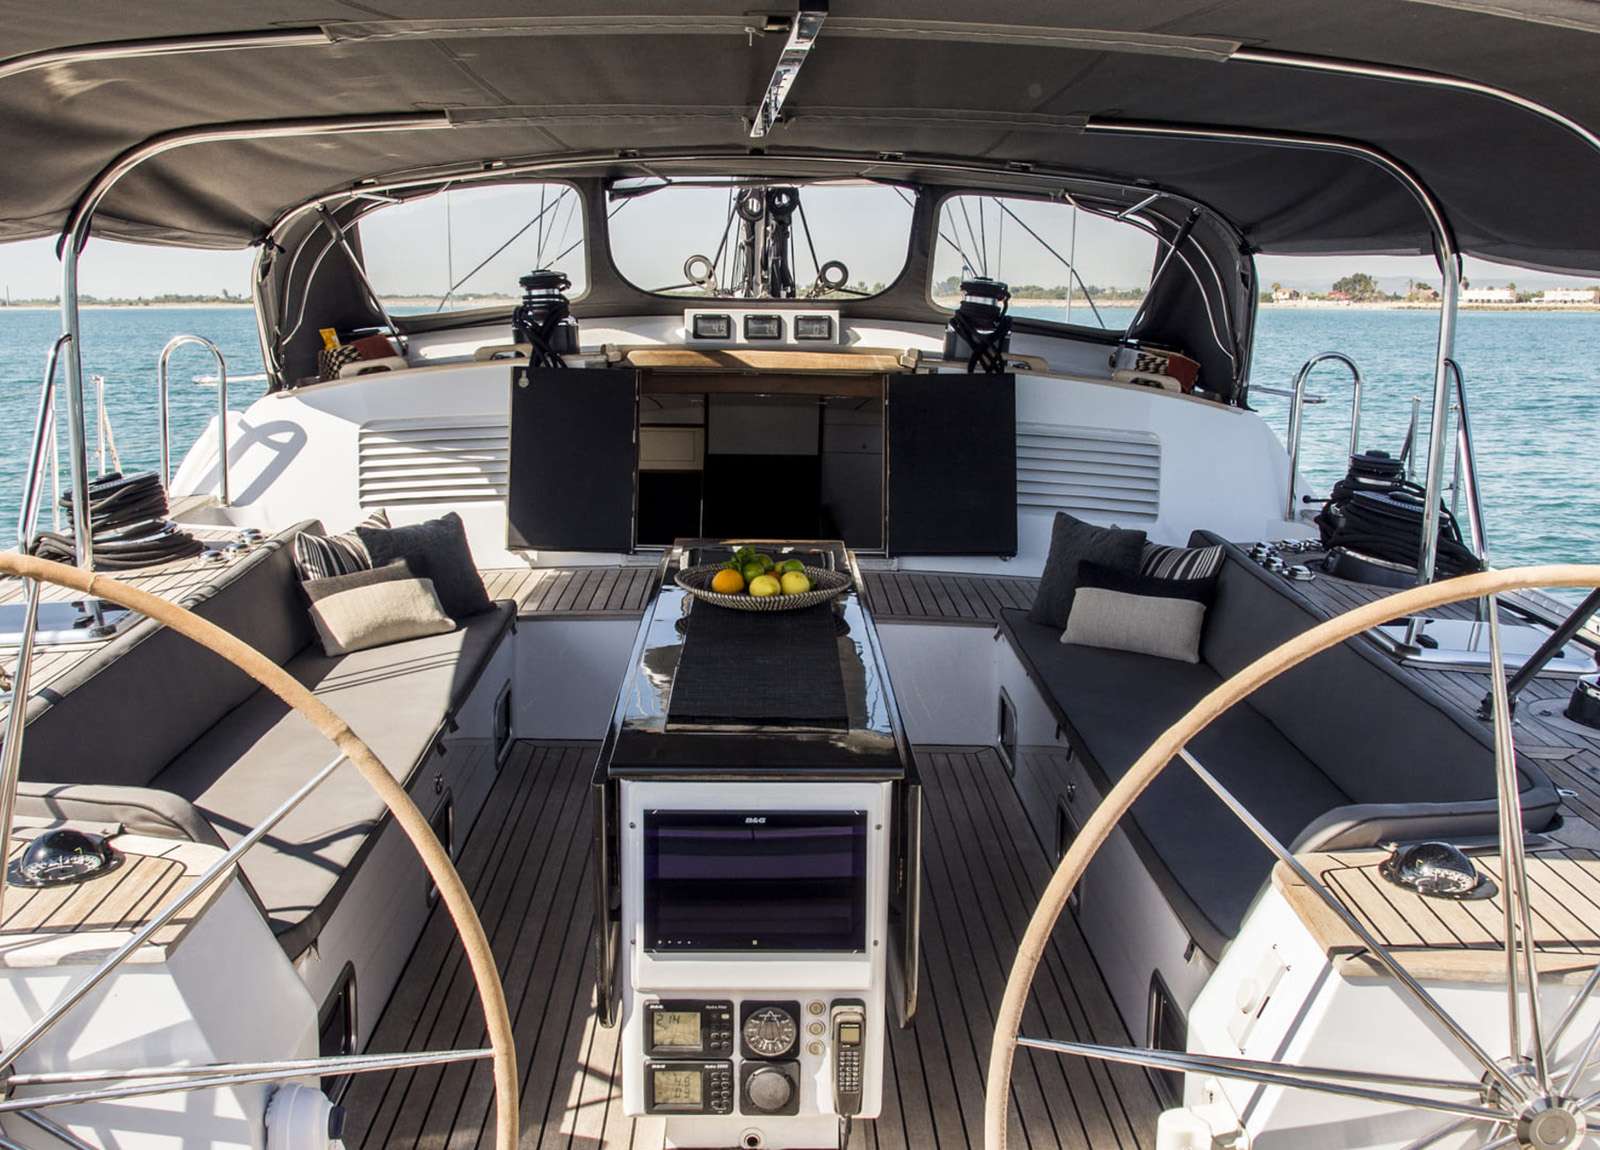 Steuerrads luxury sailing yacht trehard 30m aizu westliches mitelmeer